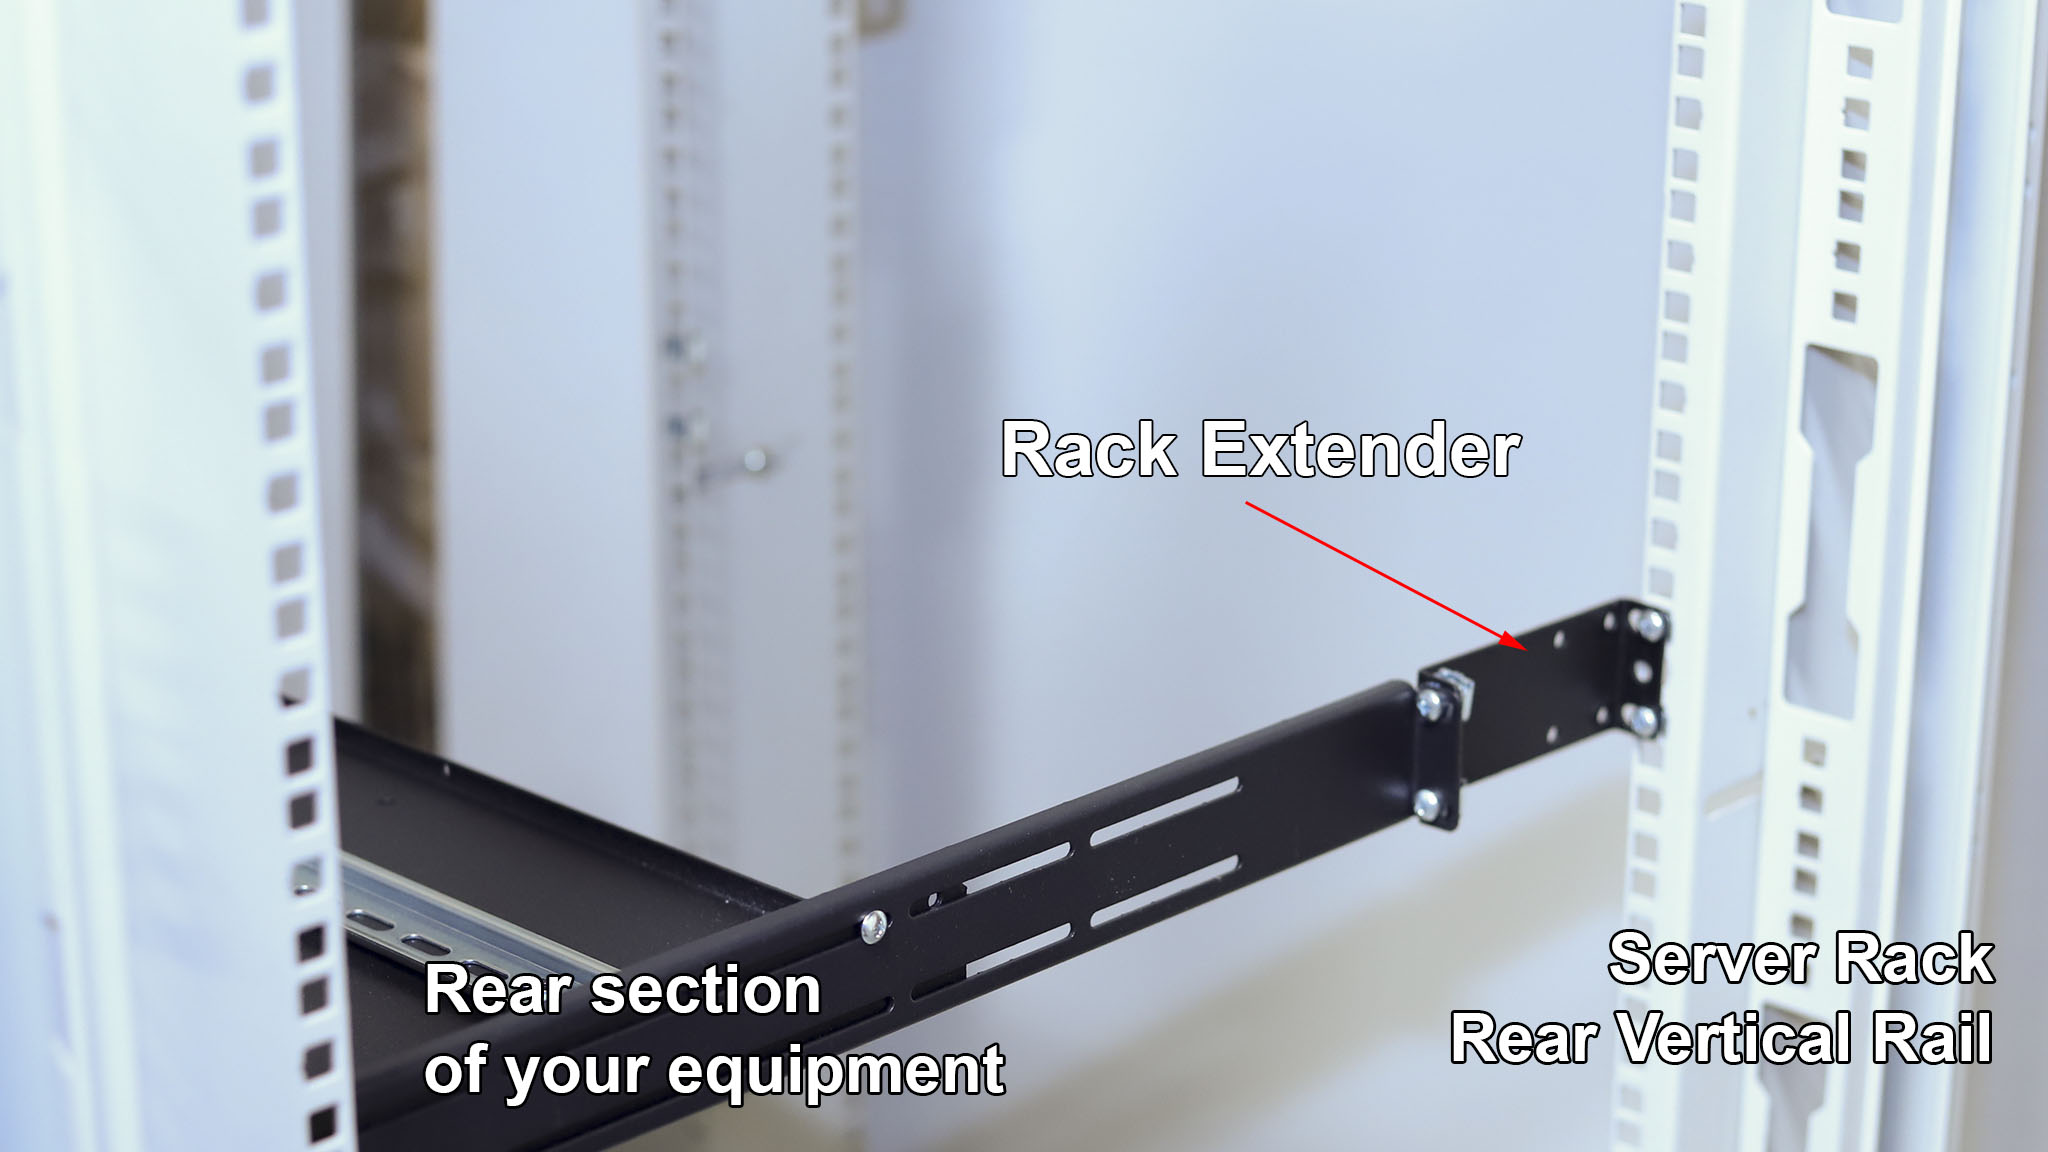 What is IAB104V10-3U rack extender